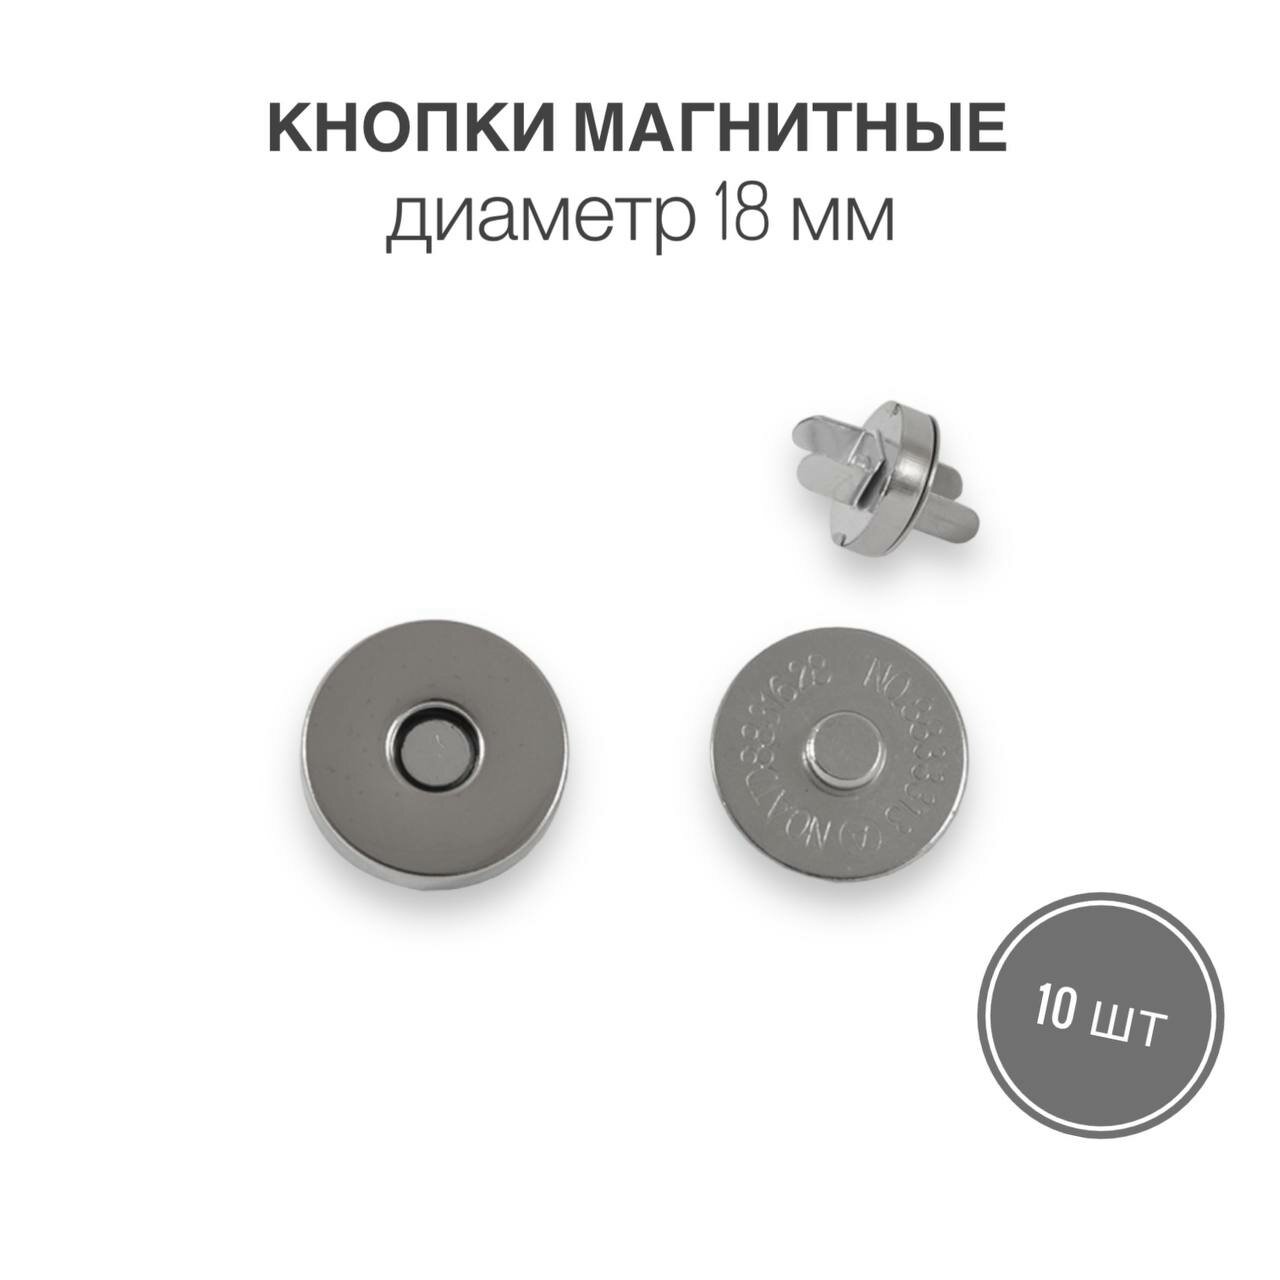 Кнопки металлические магнитные для сумок и рукоделия, диаметр 18 мм, 10 шт. в упаковке, никель